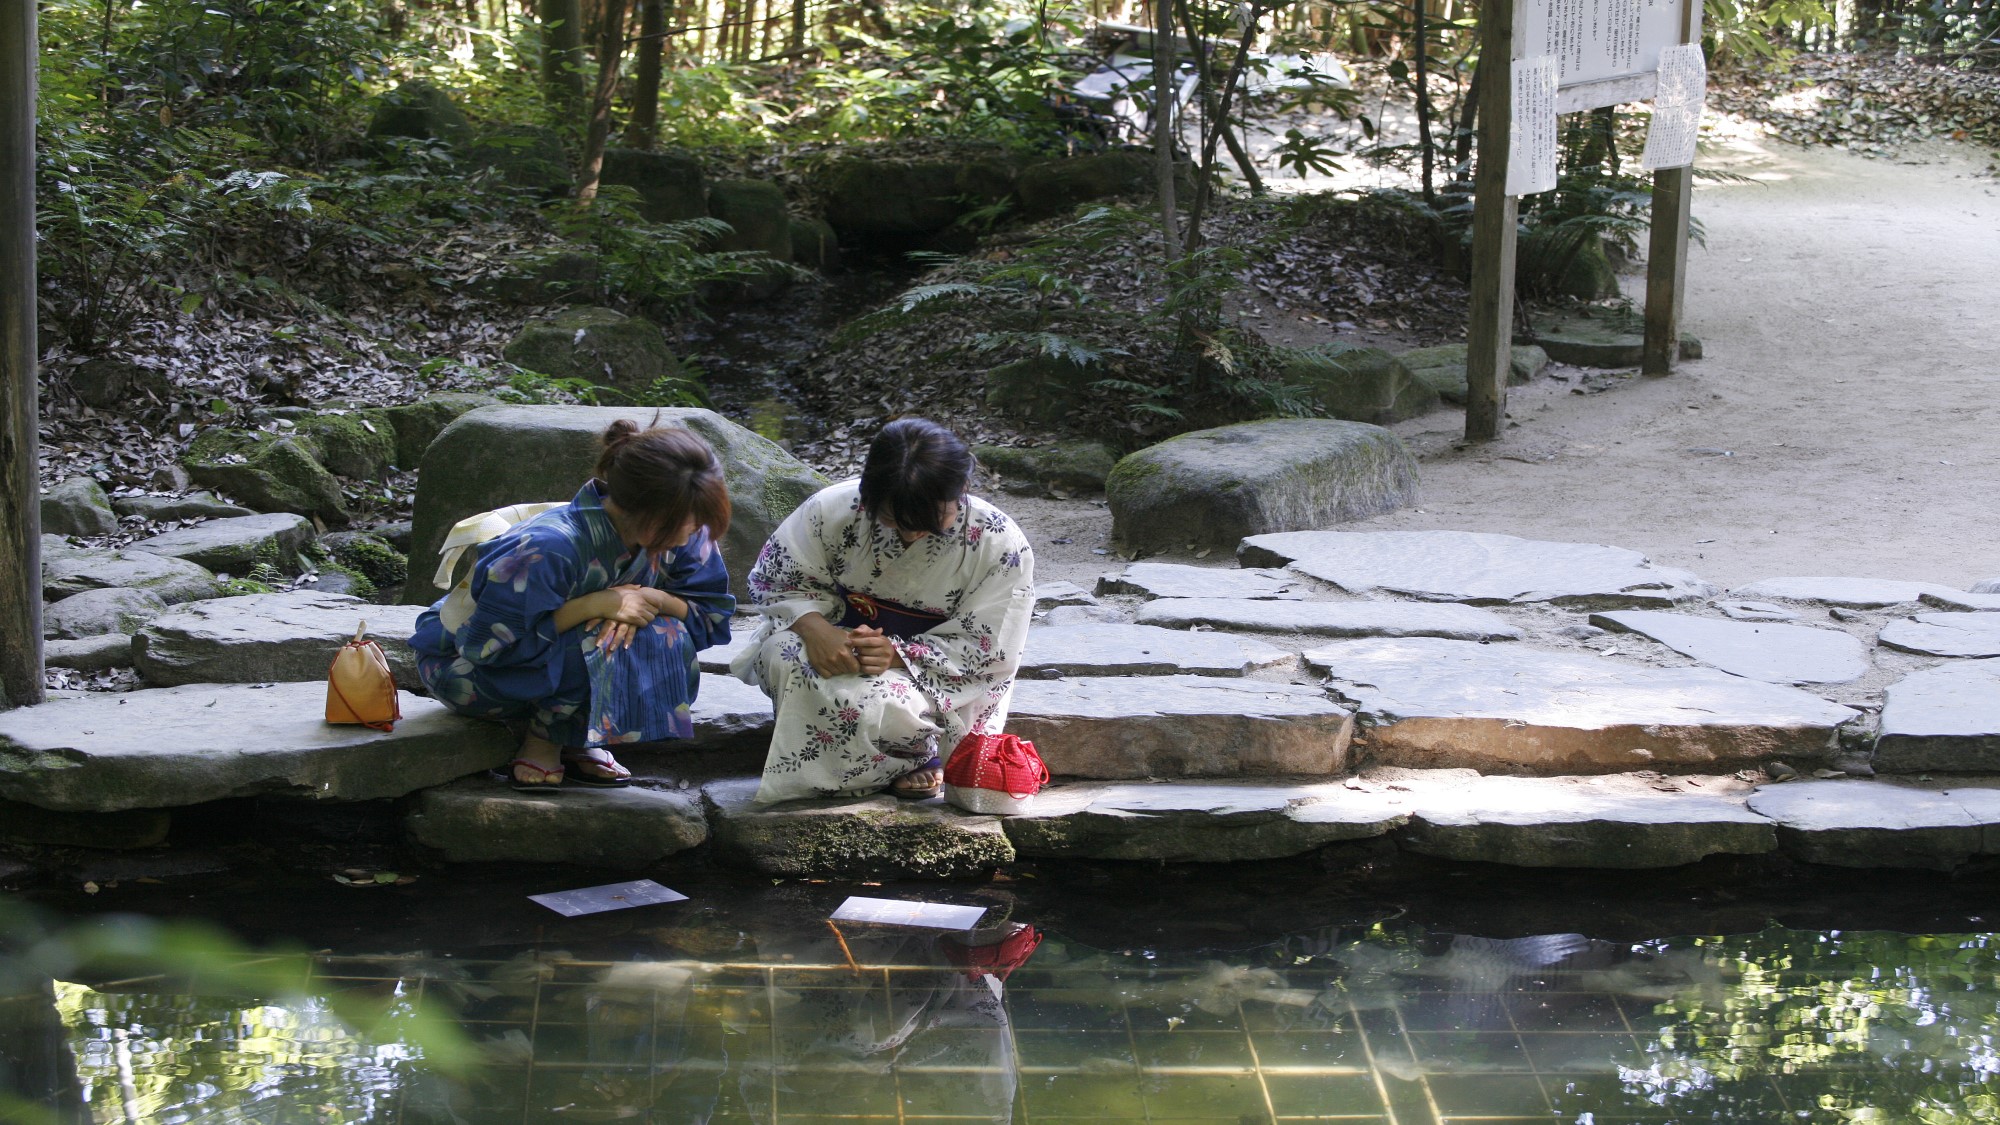 【八重垣神社】鏡の池占いは、硬貨を乗せた紙が早く沈むほど良縁に早く結ばれるそうです☆